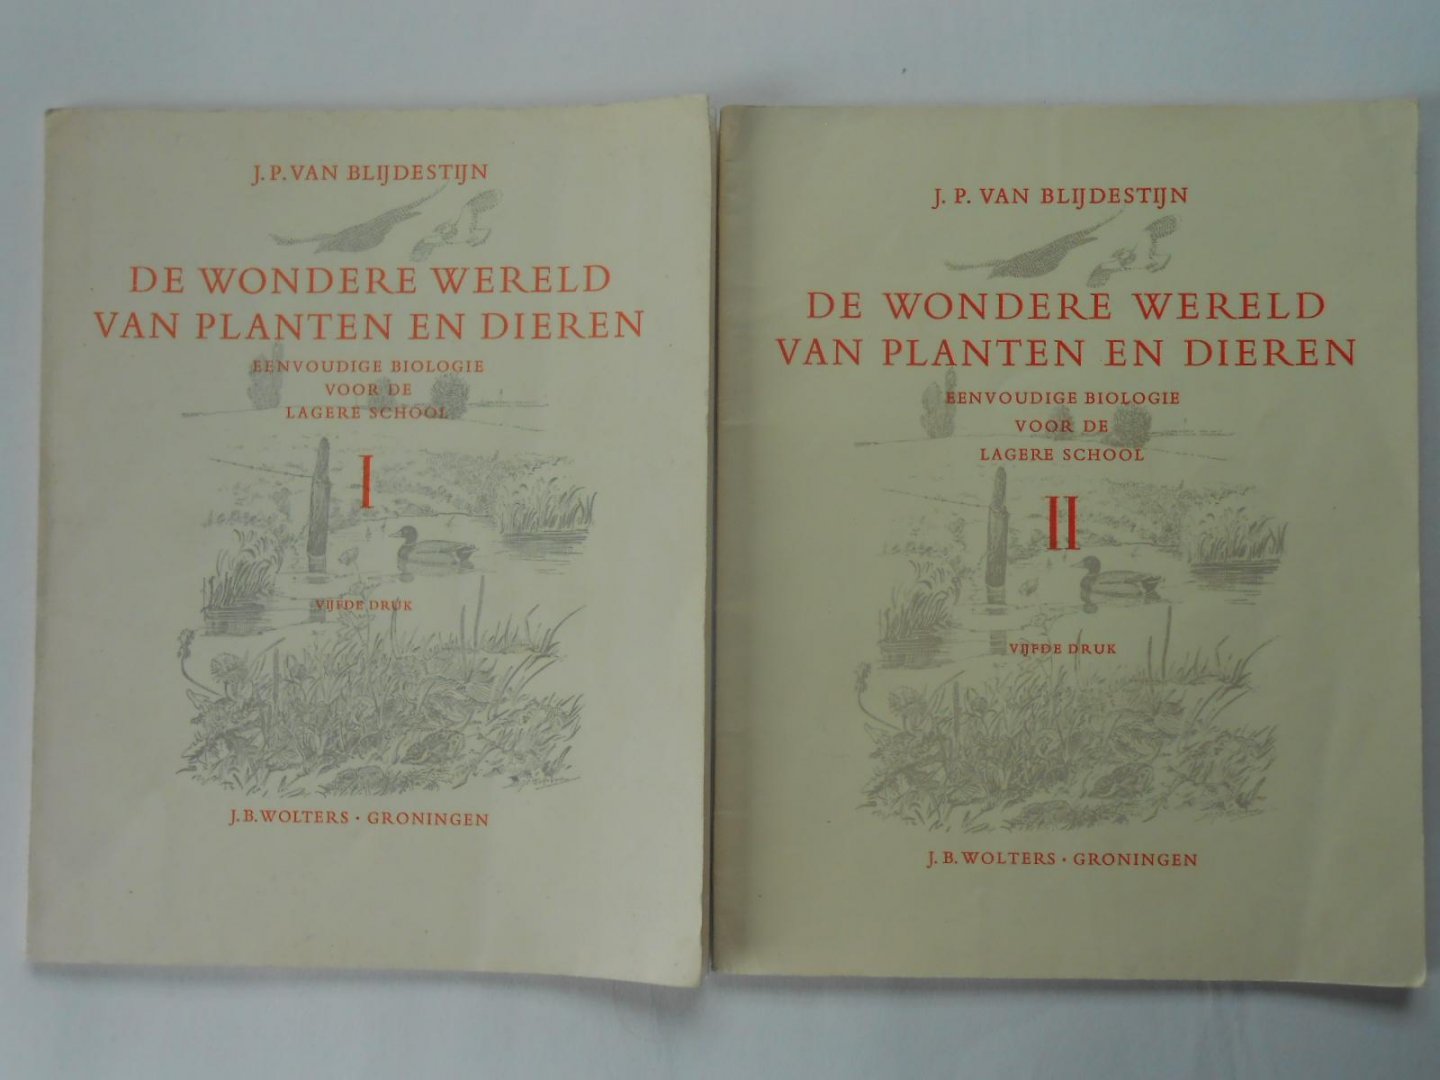 Blijdestijn, J. P. van - De wondere wereld van planten en dieren: eenvoudige biologie voor de lagere school